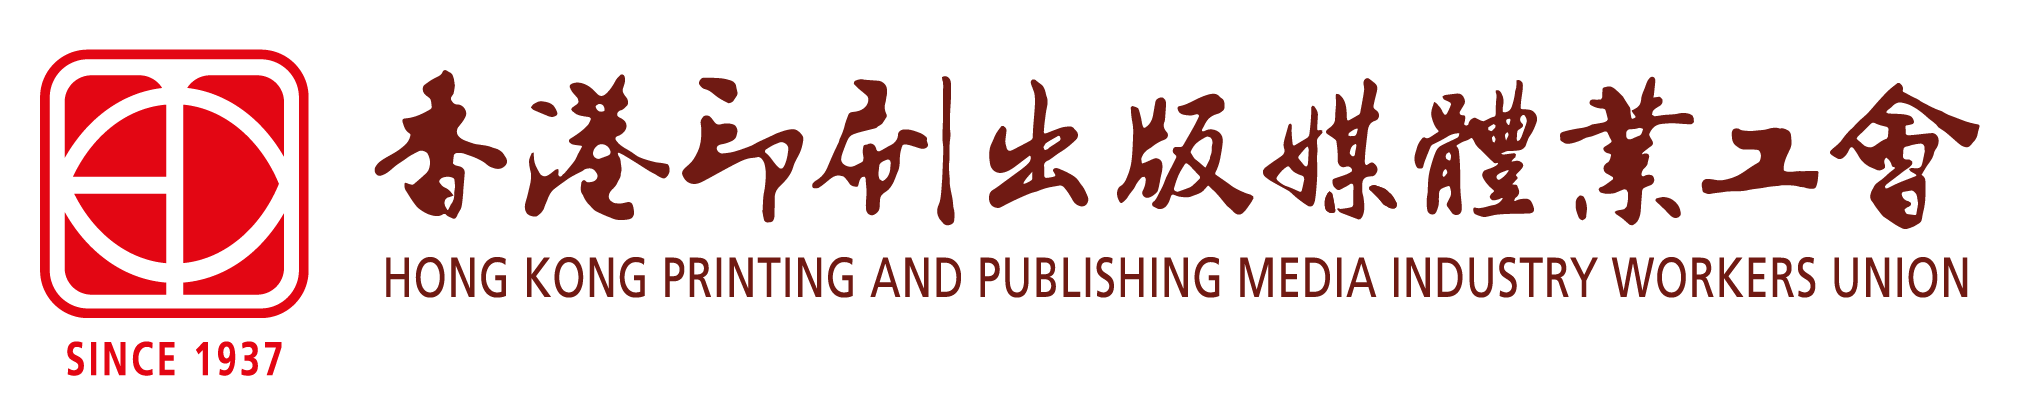 香港印刷出版媒體業工會